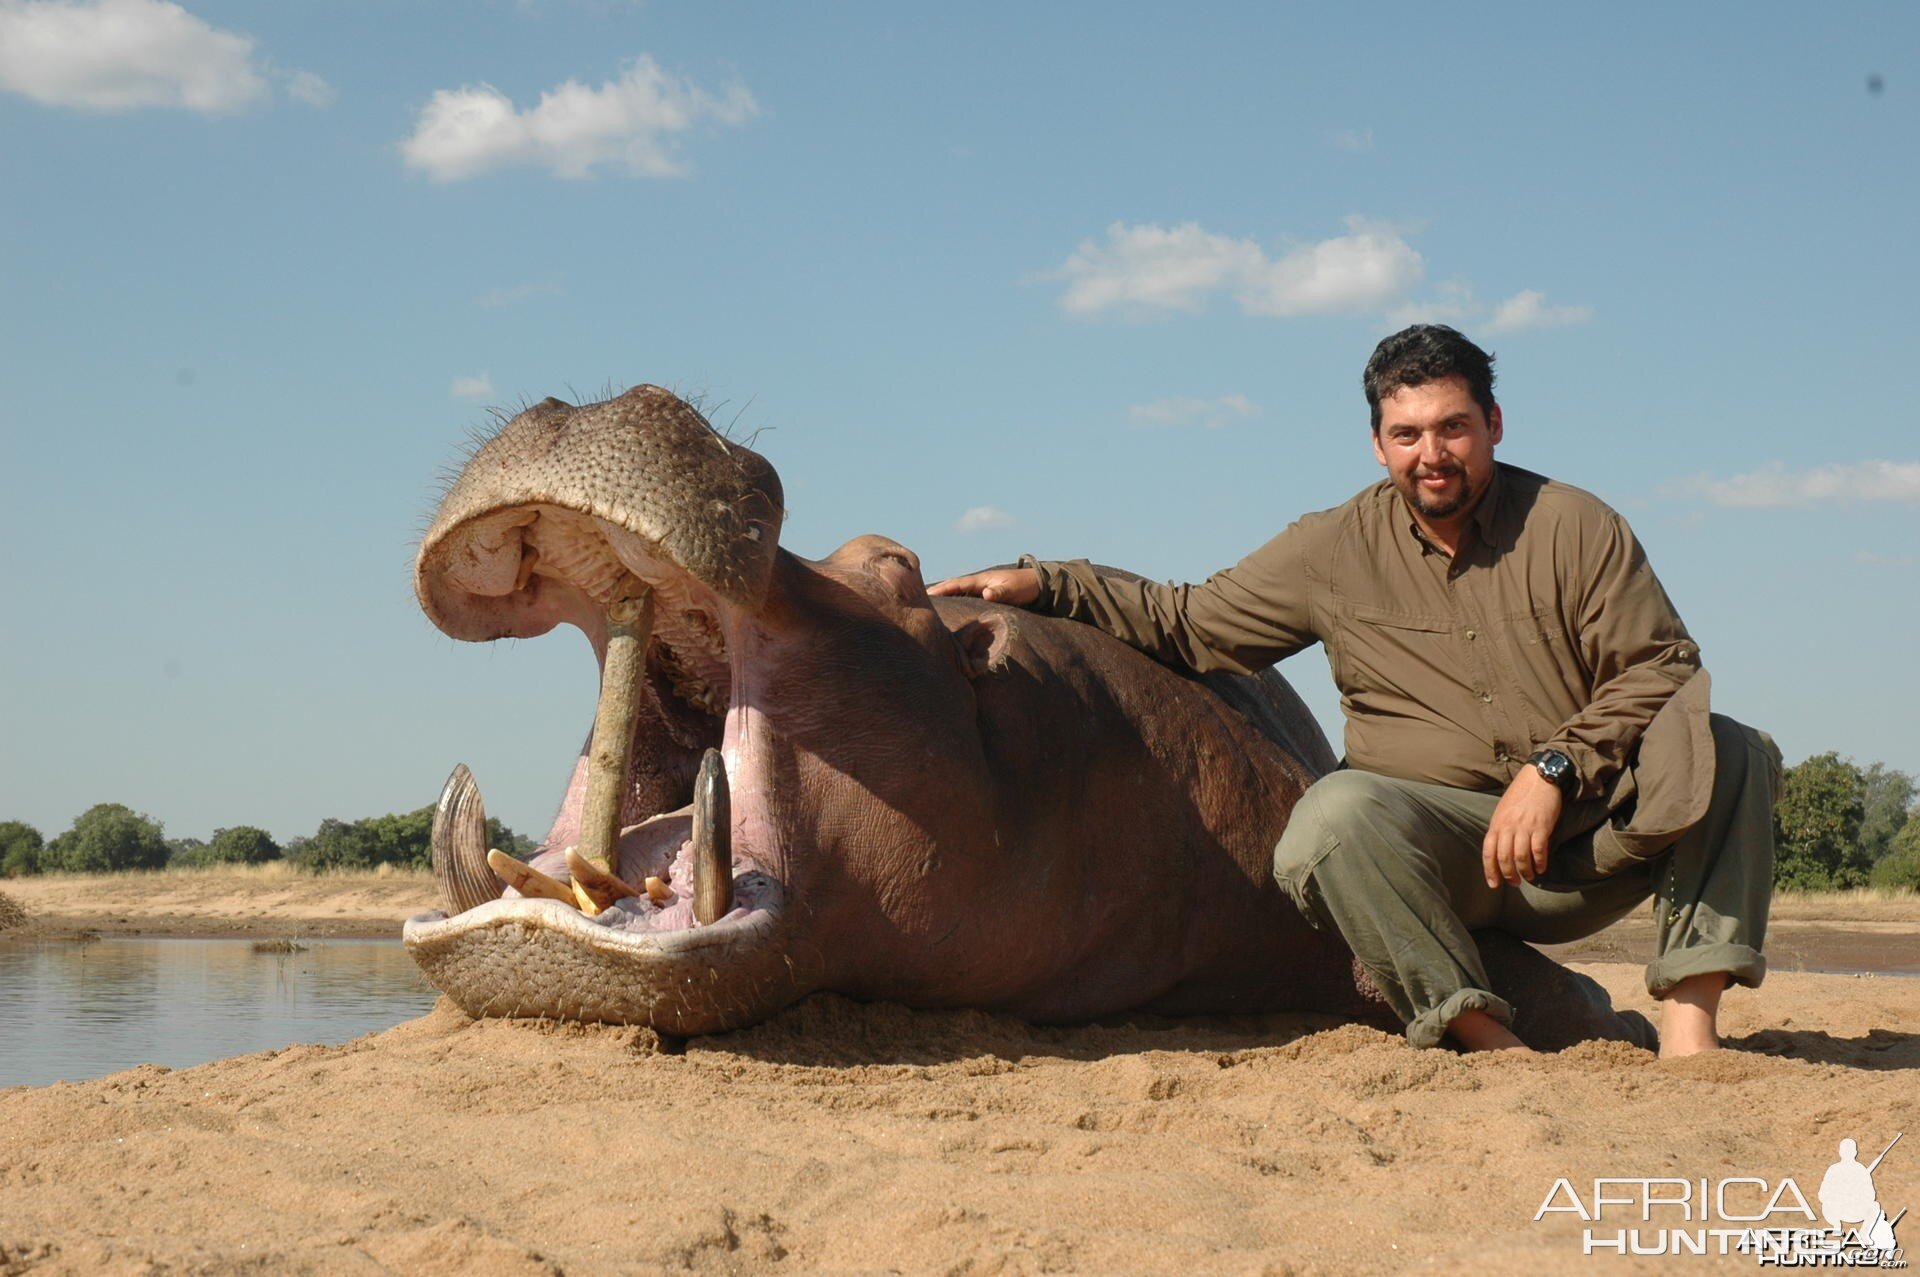 Hippo hunted in Zimbabwe